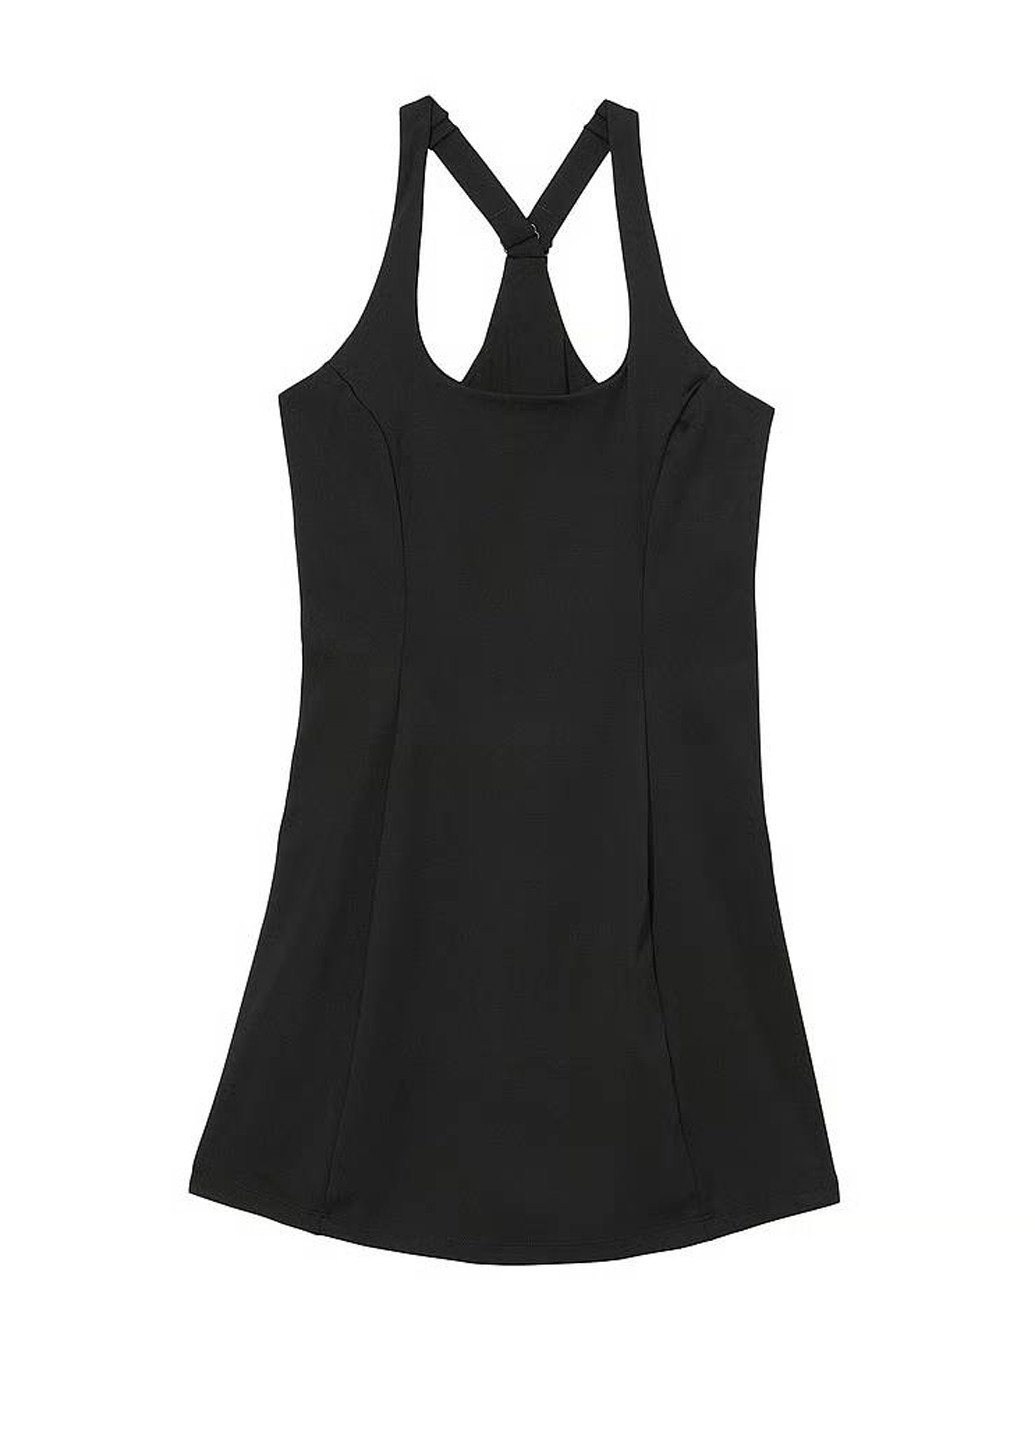 Черное спортивное платье платье-майка Victoria's Secret однотонное